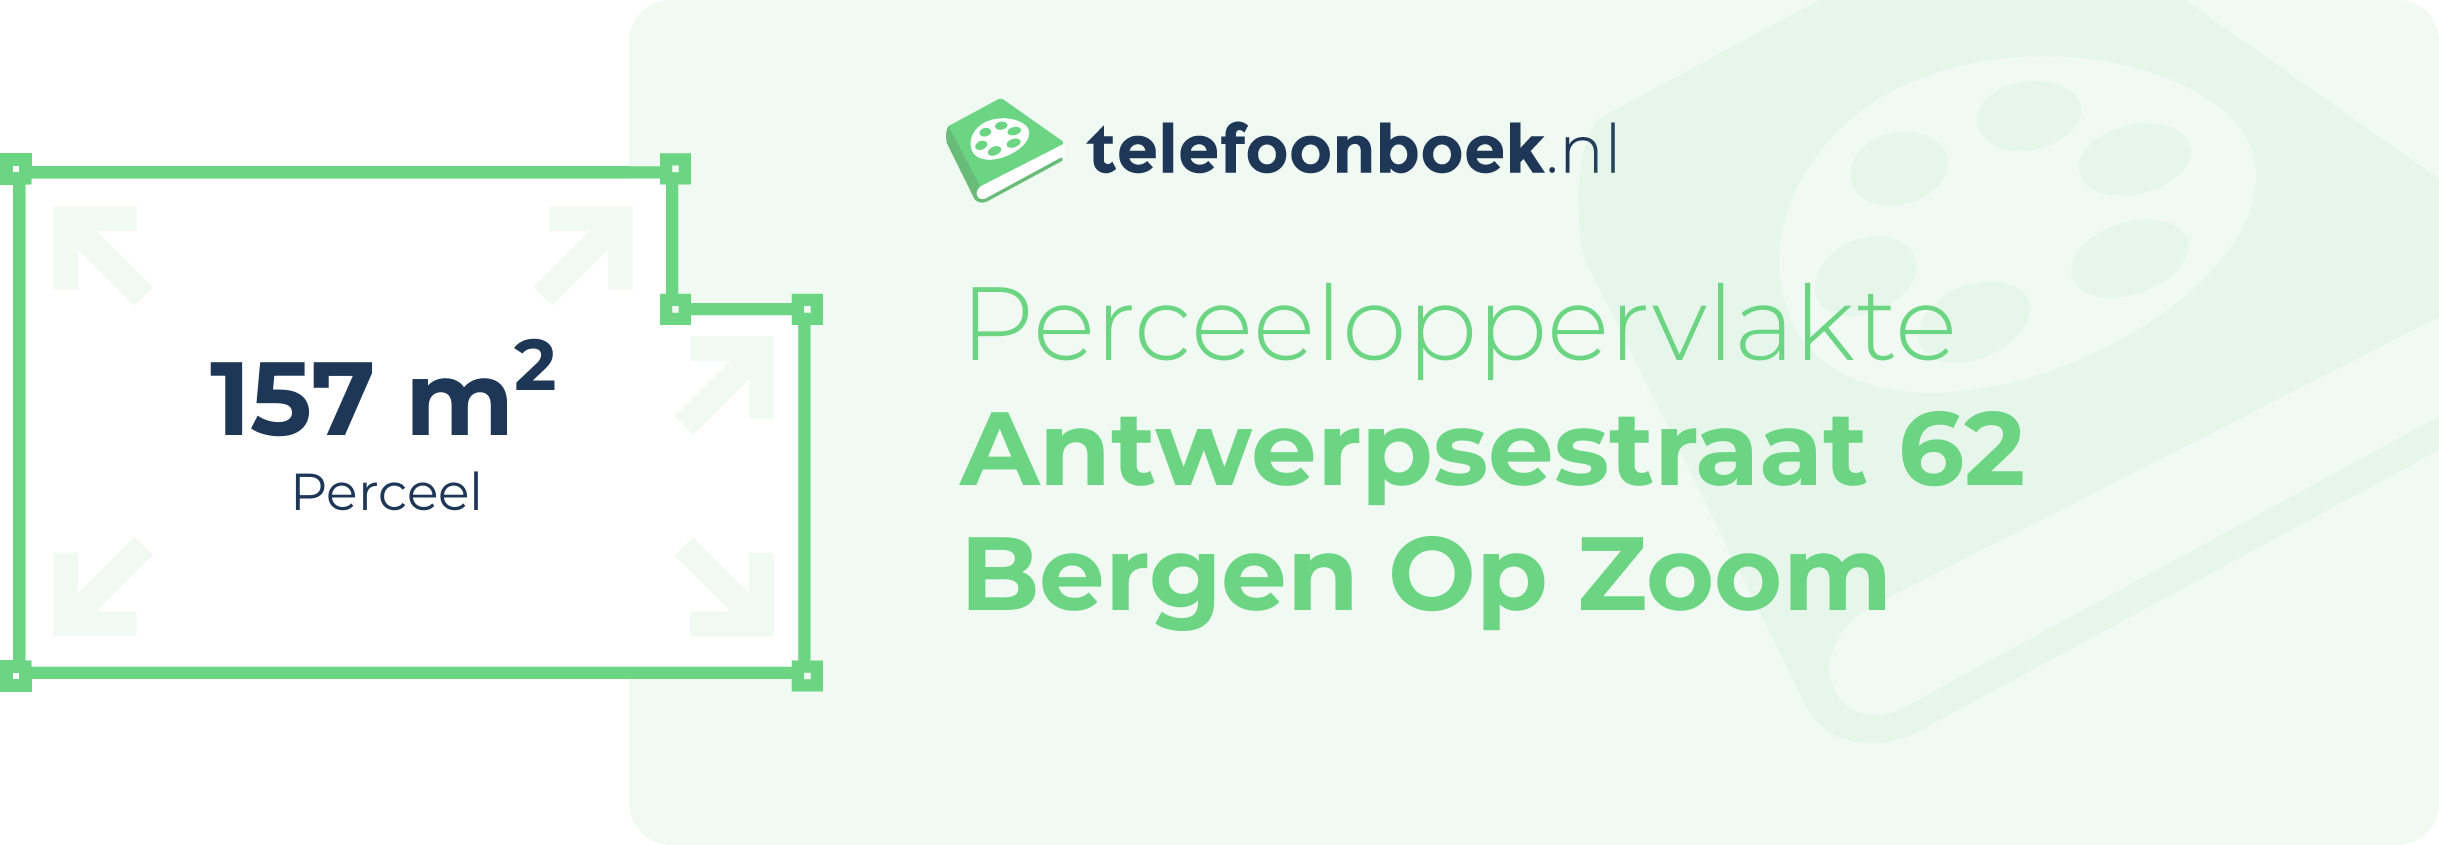 Perceeloppervlakte Antwerpsestraat 62 Bergen Op Zoom